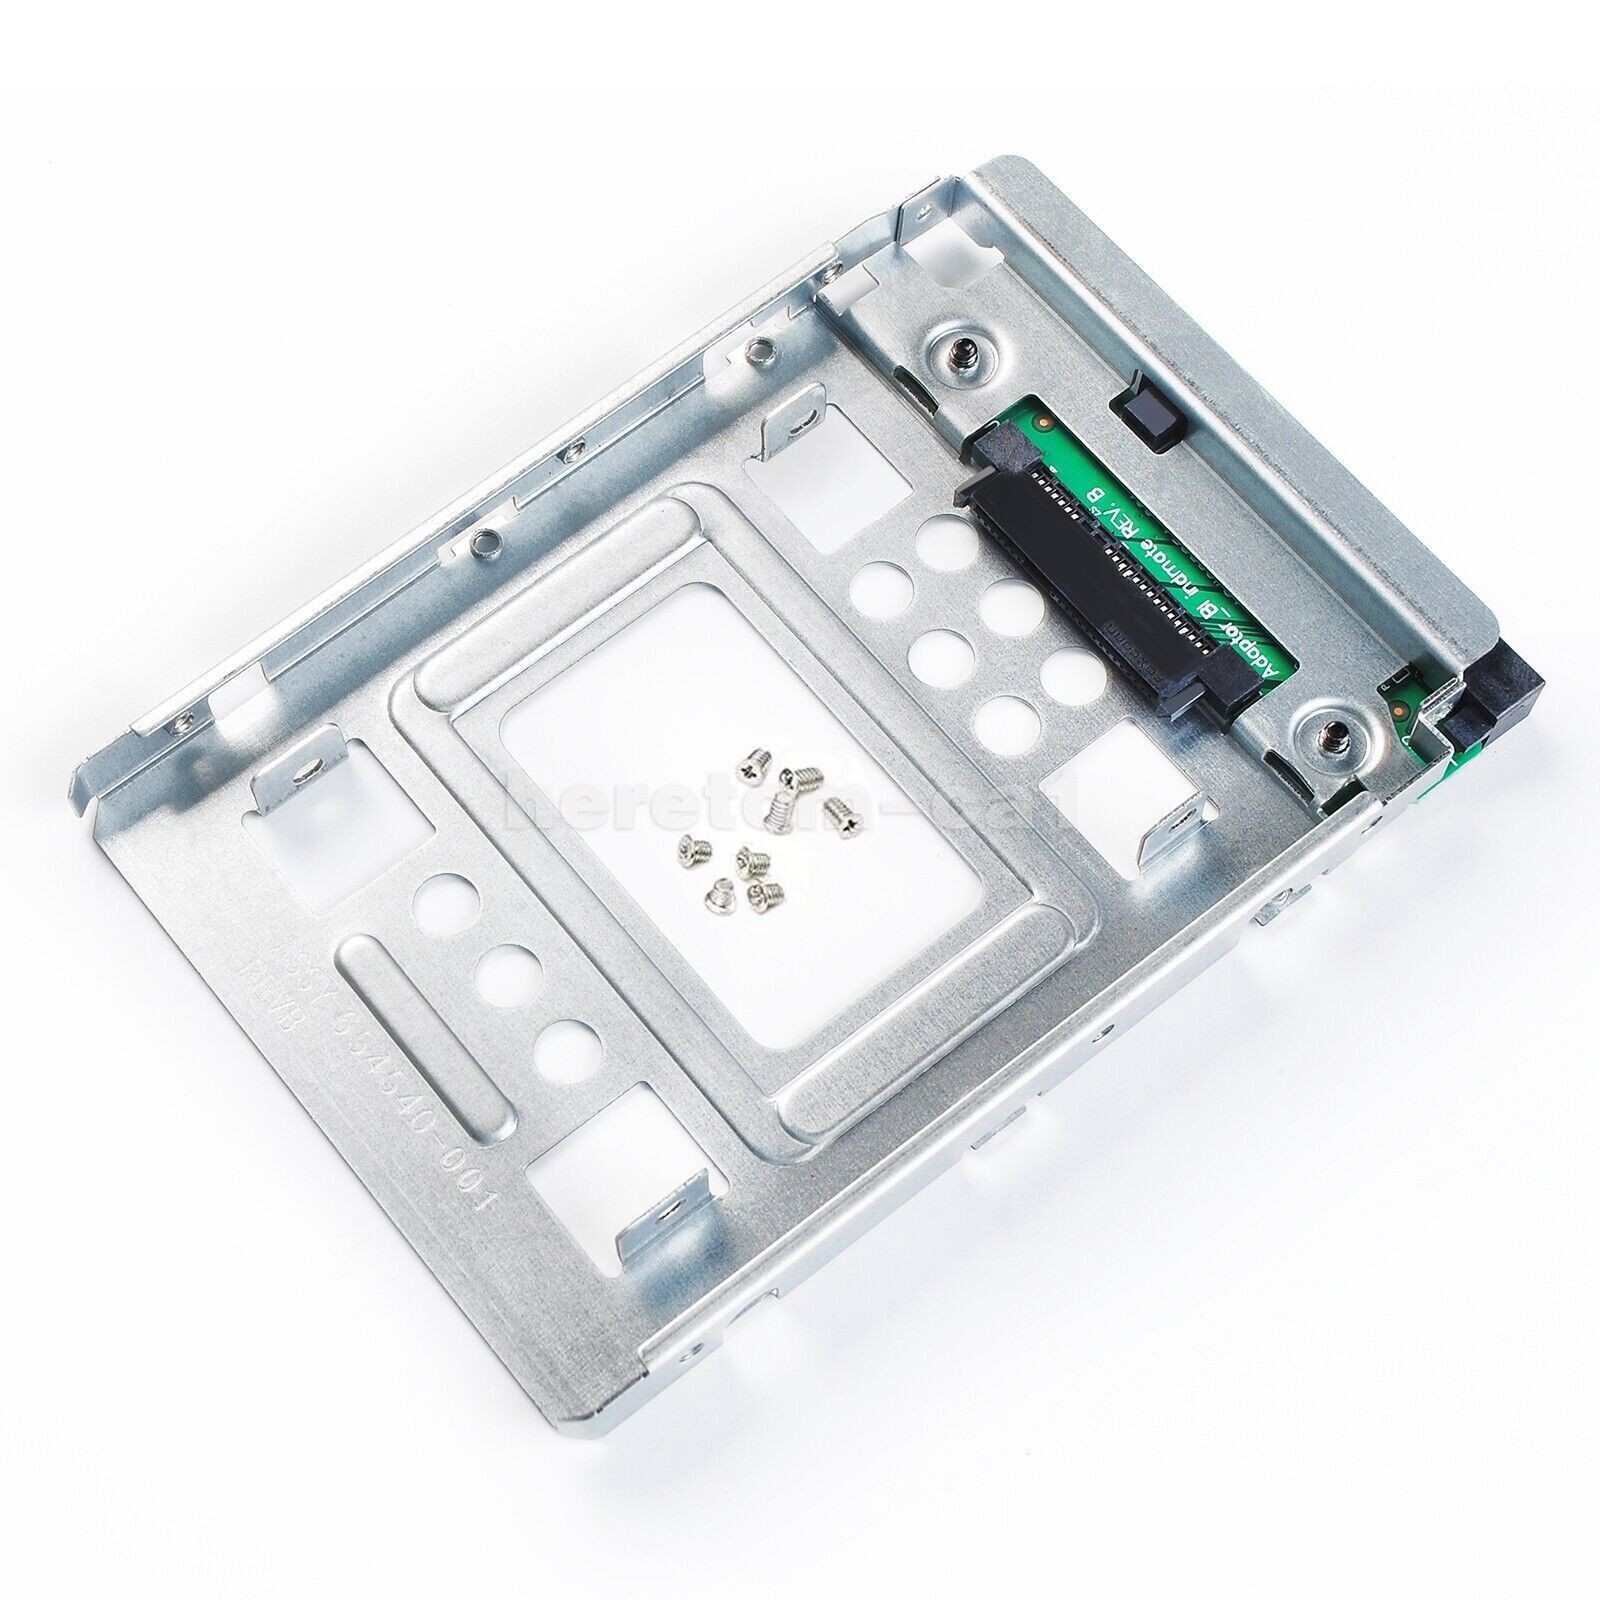 Soporte de bandeja de caddy adaptador 654540-001 para HP SATA/SSD 2,5"" a 3,5"" para soporte de bandeja de disco duro